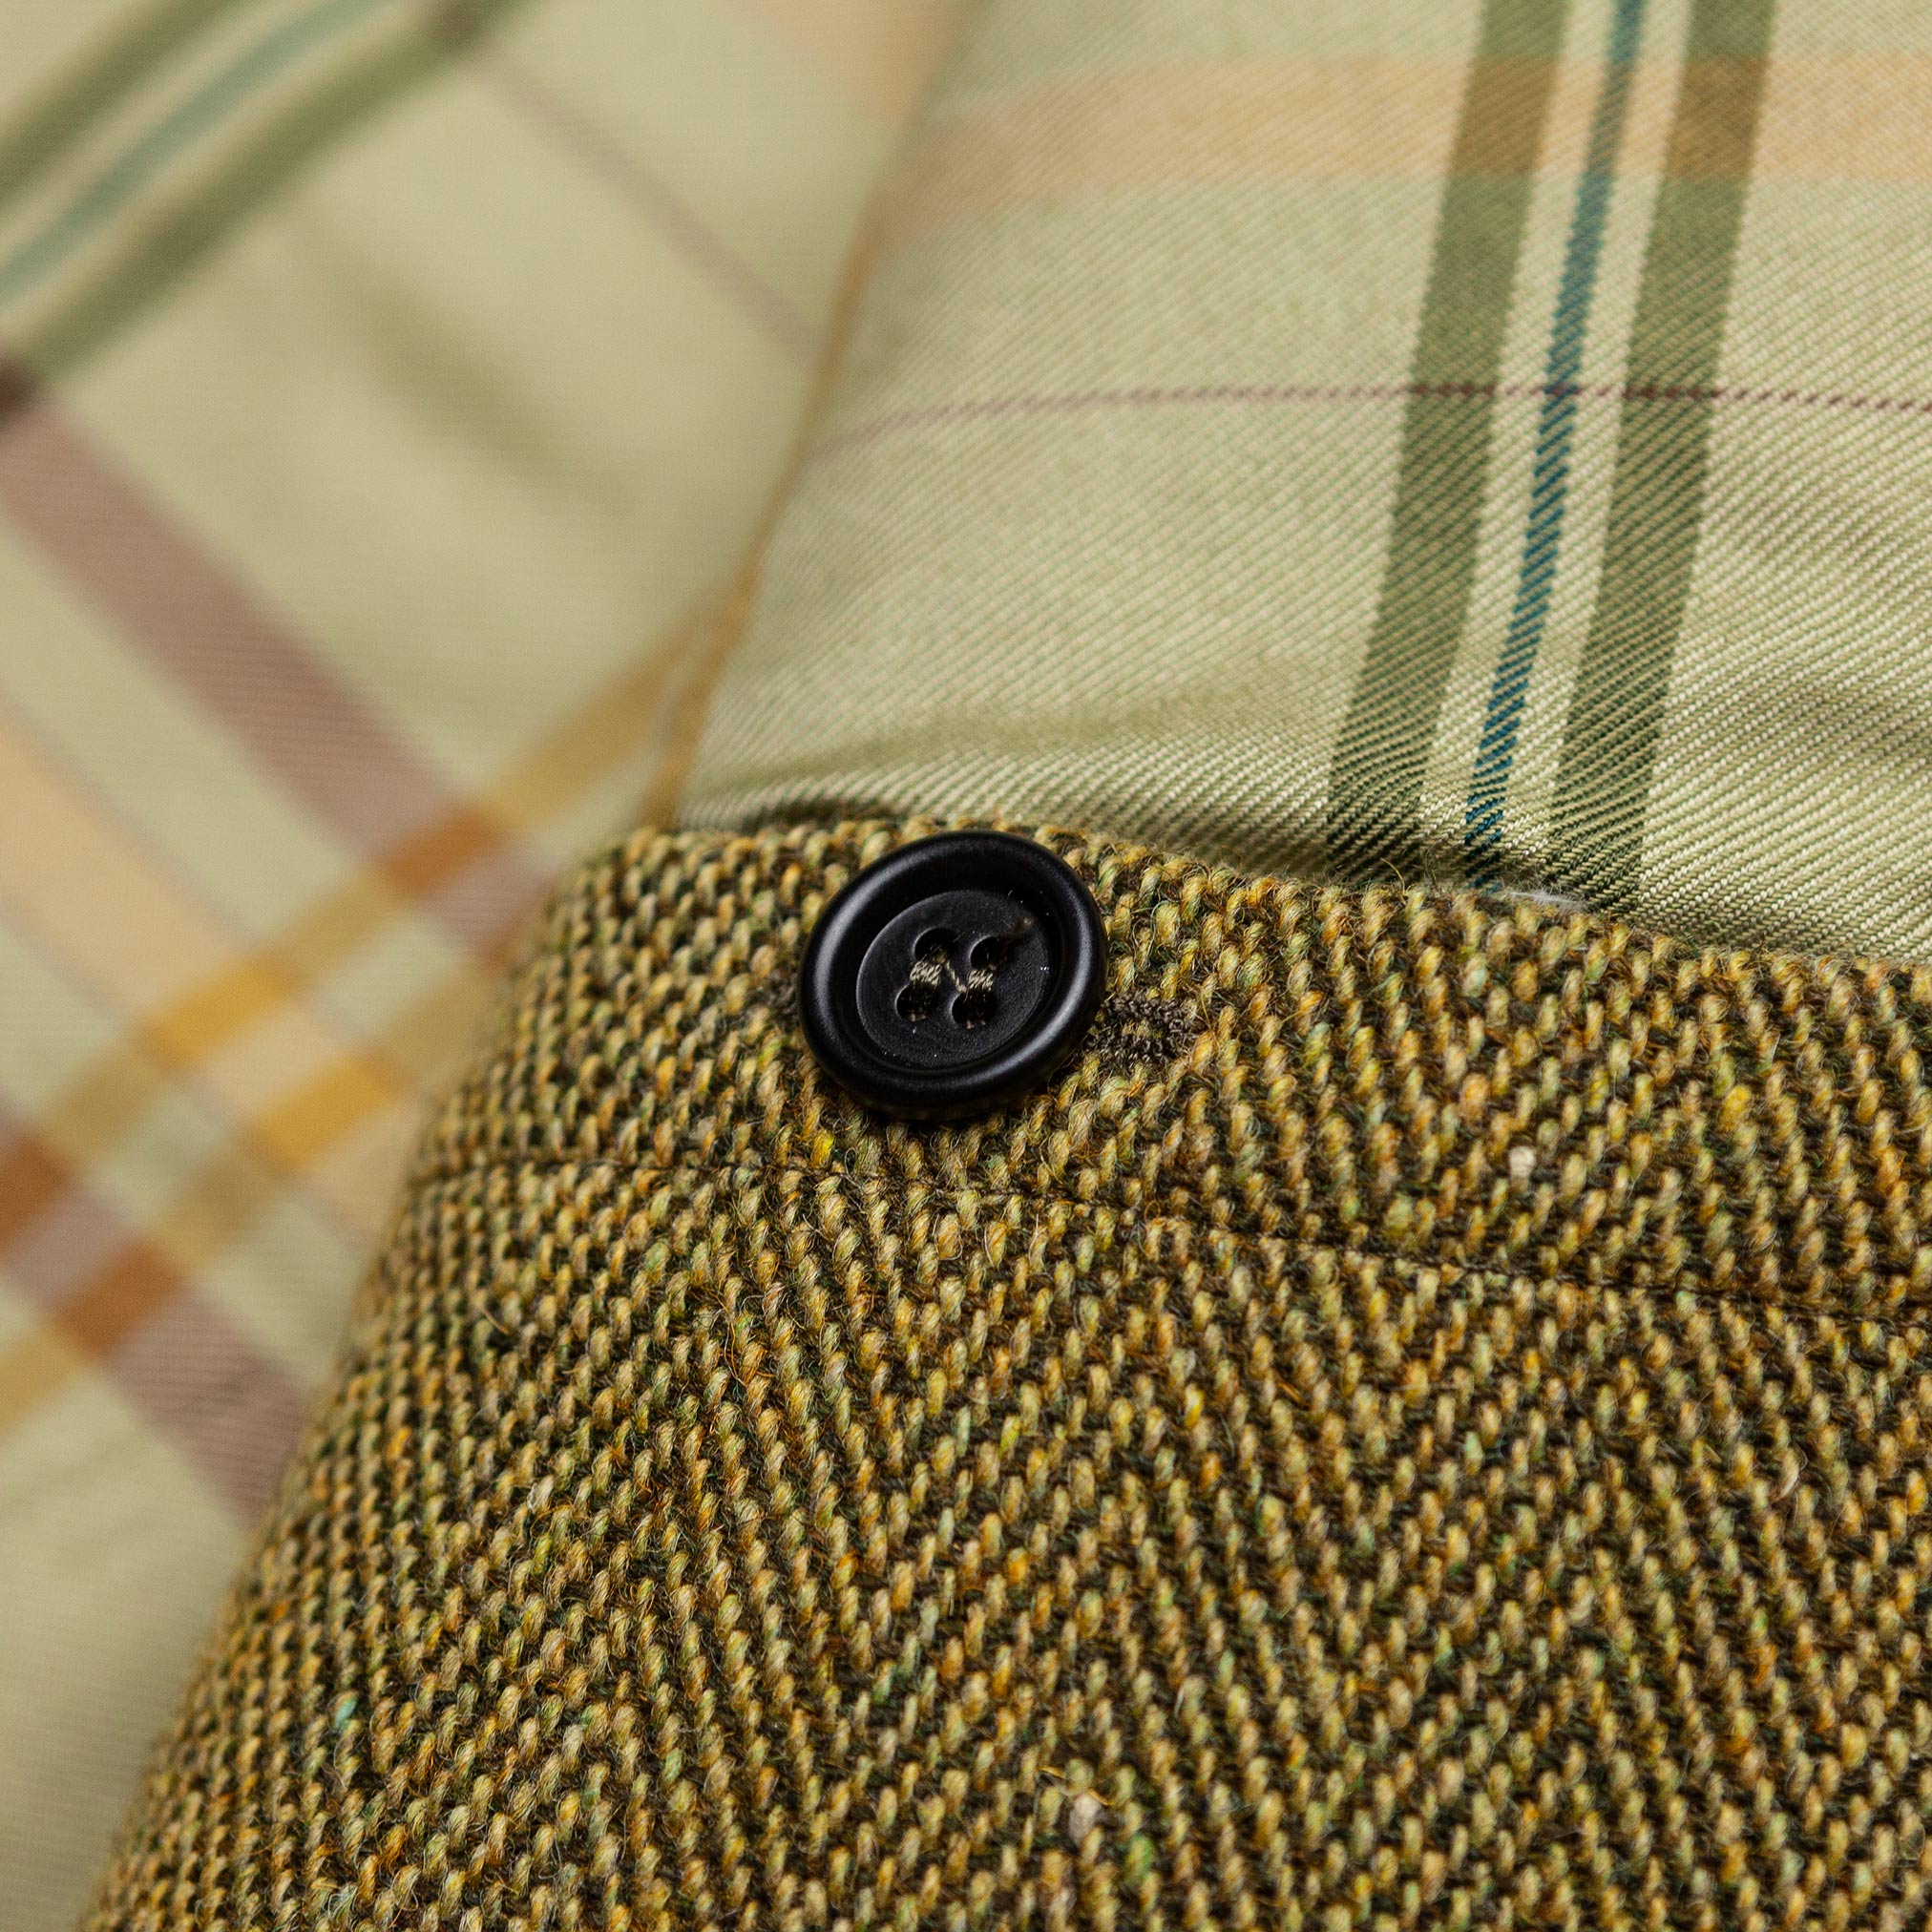 Tweed Herringbone Jacket in Olive